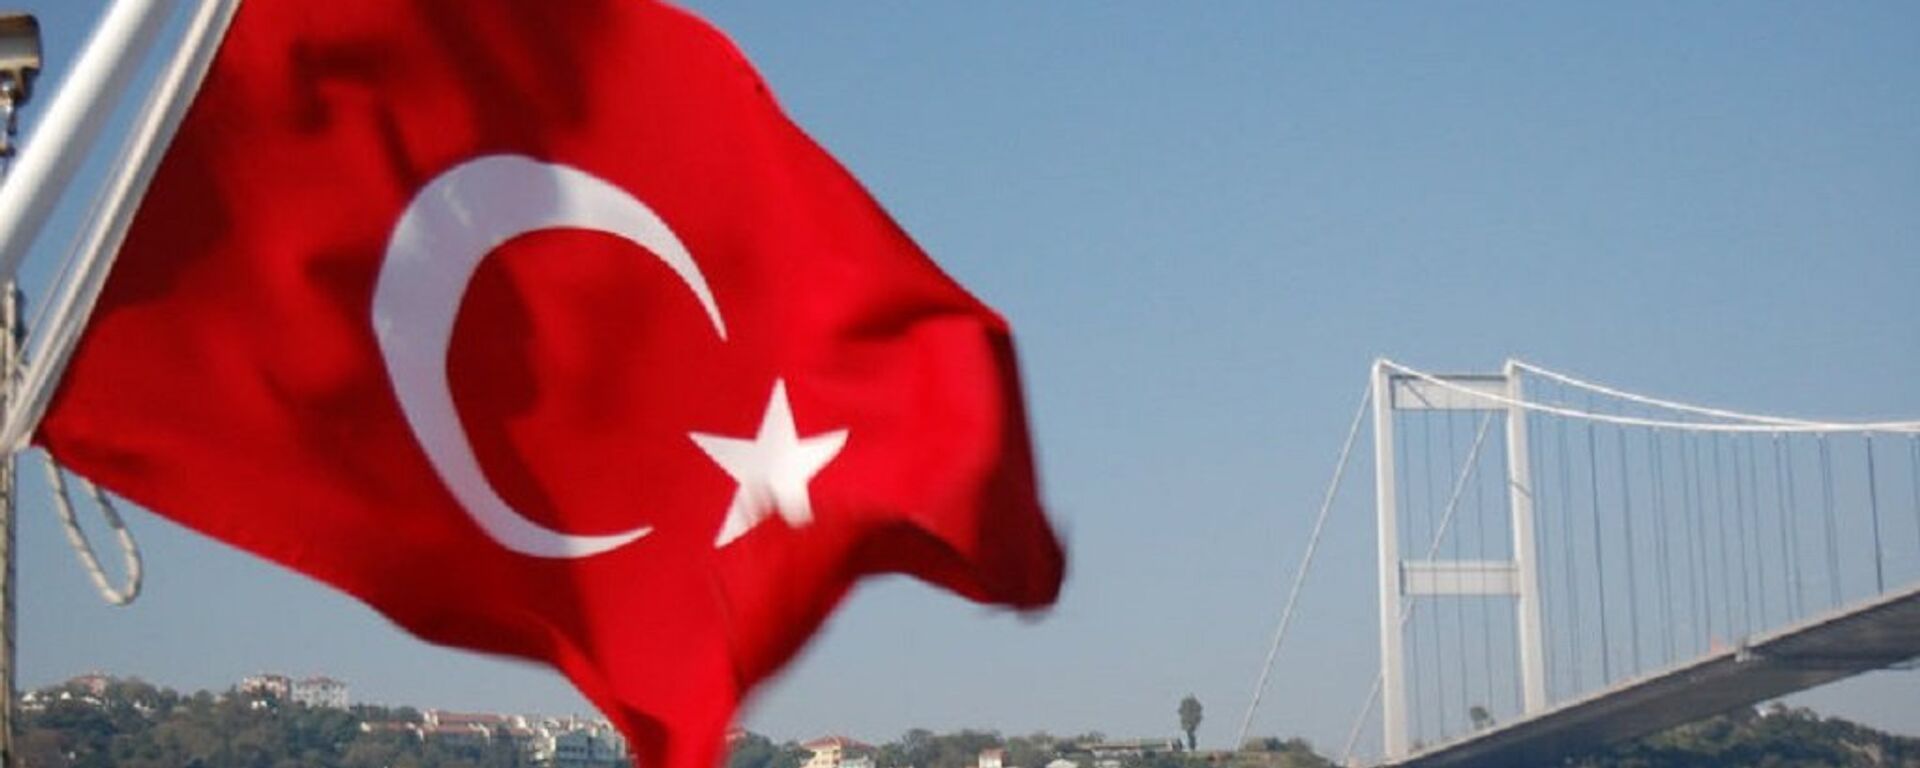 Флаг Турции. Архивное фото. - Sputnik Абхазия, 1920, 16.11.2021